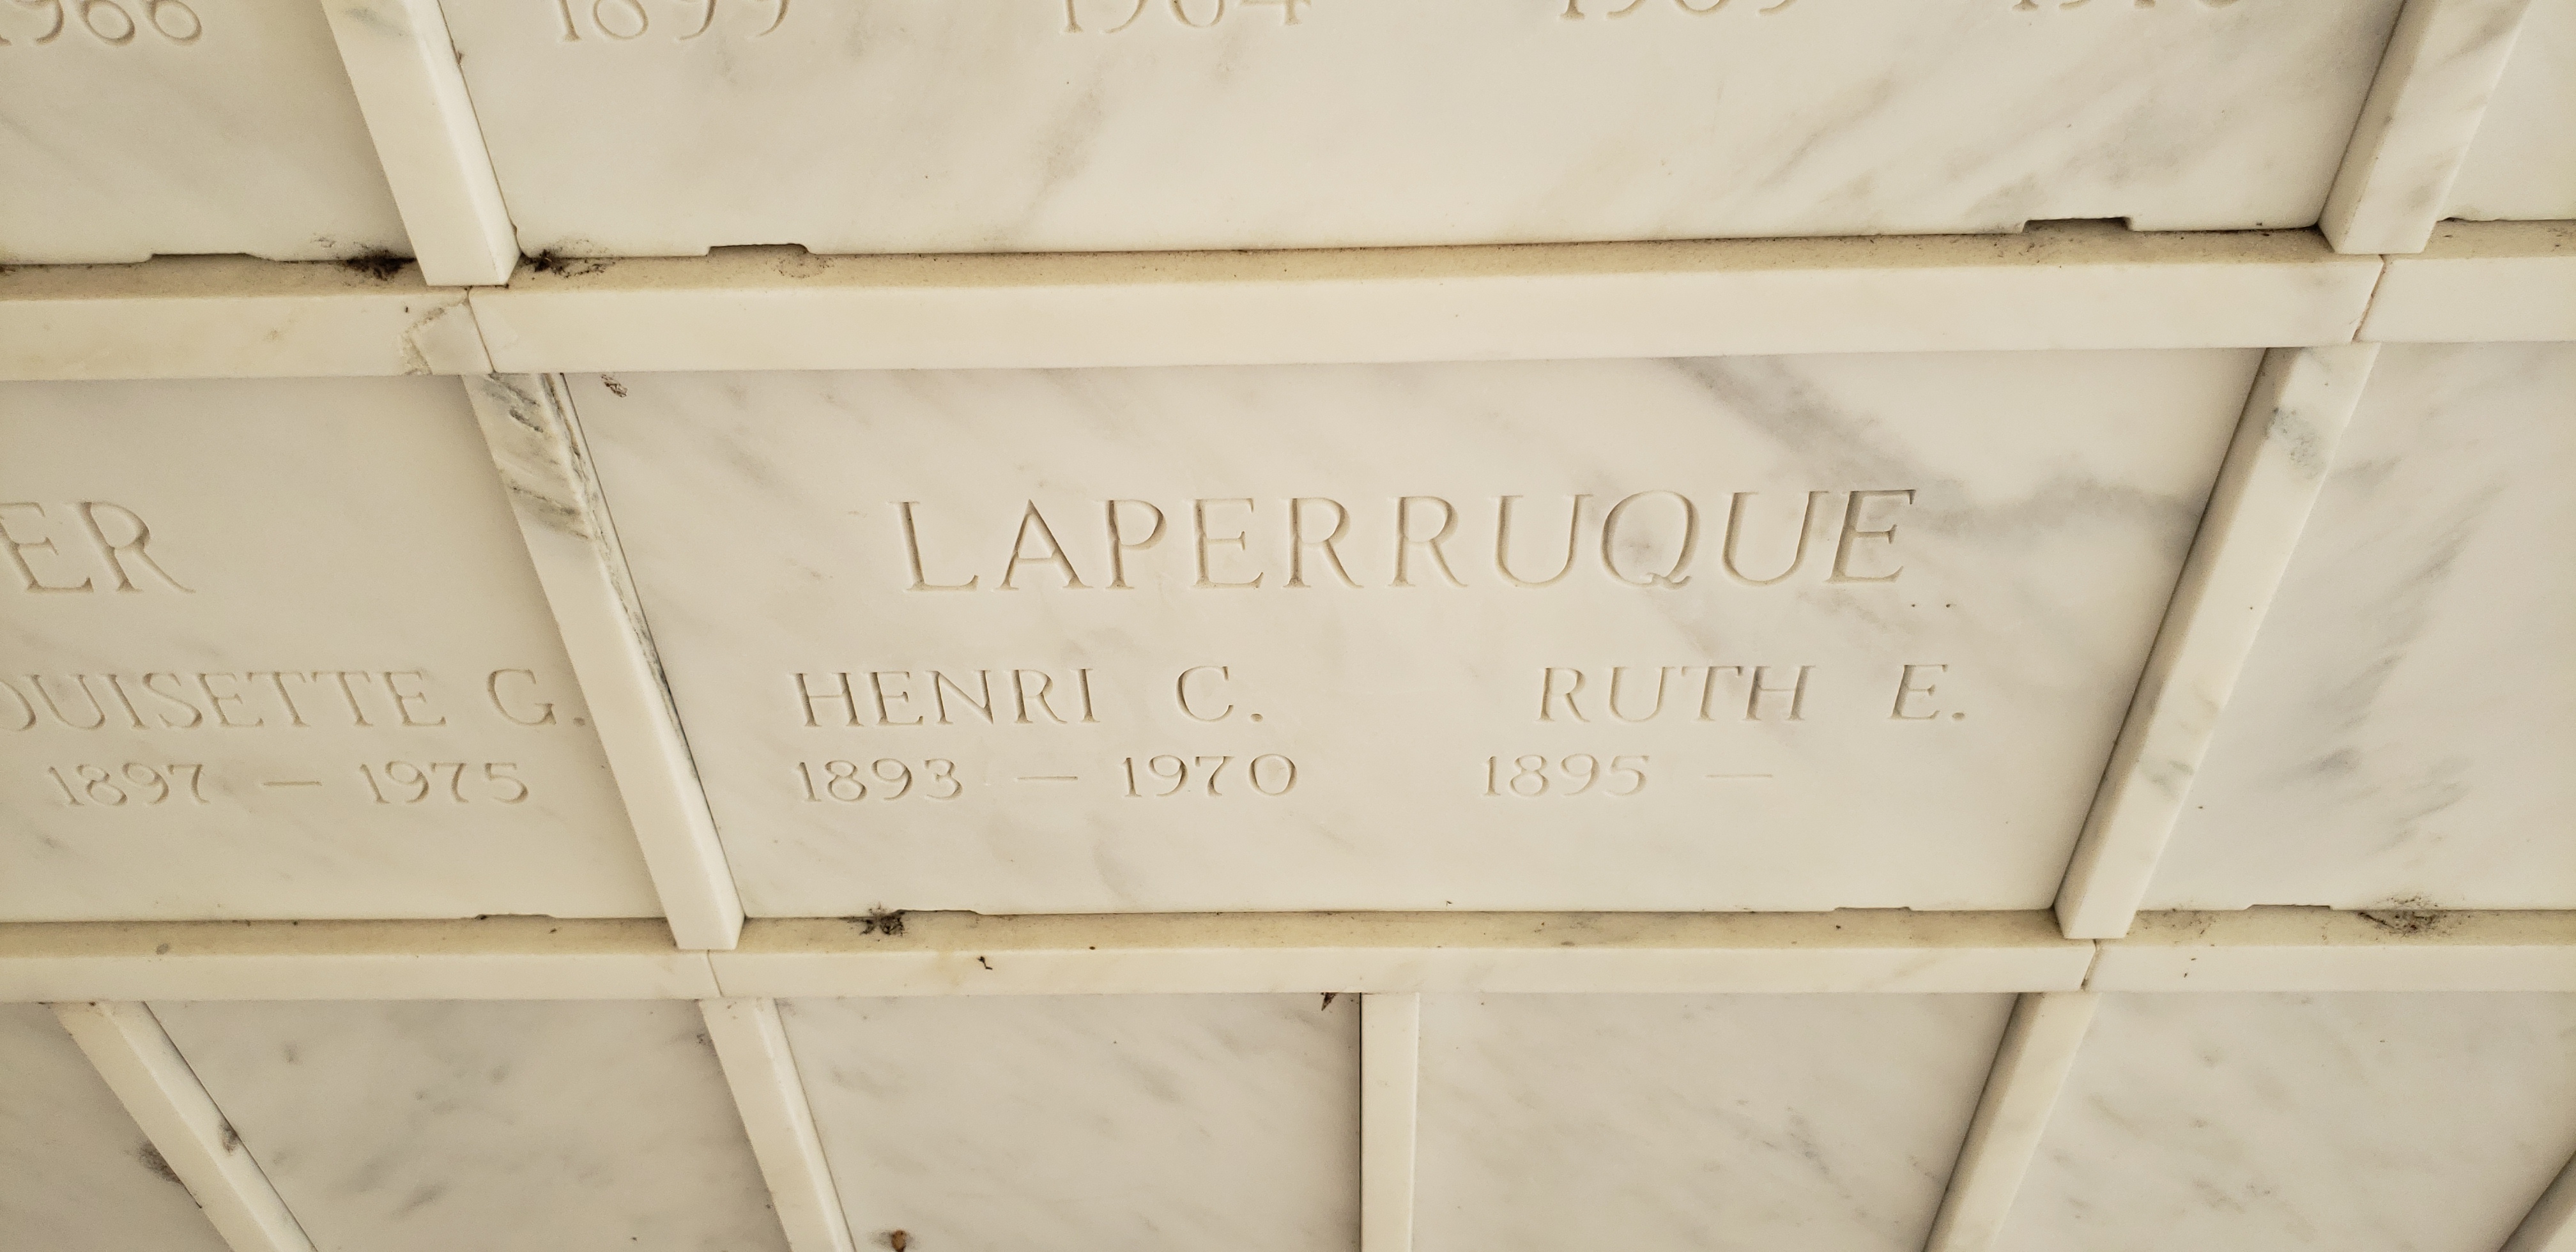 Henri C Laperruque